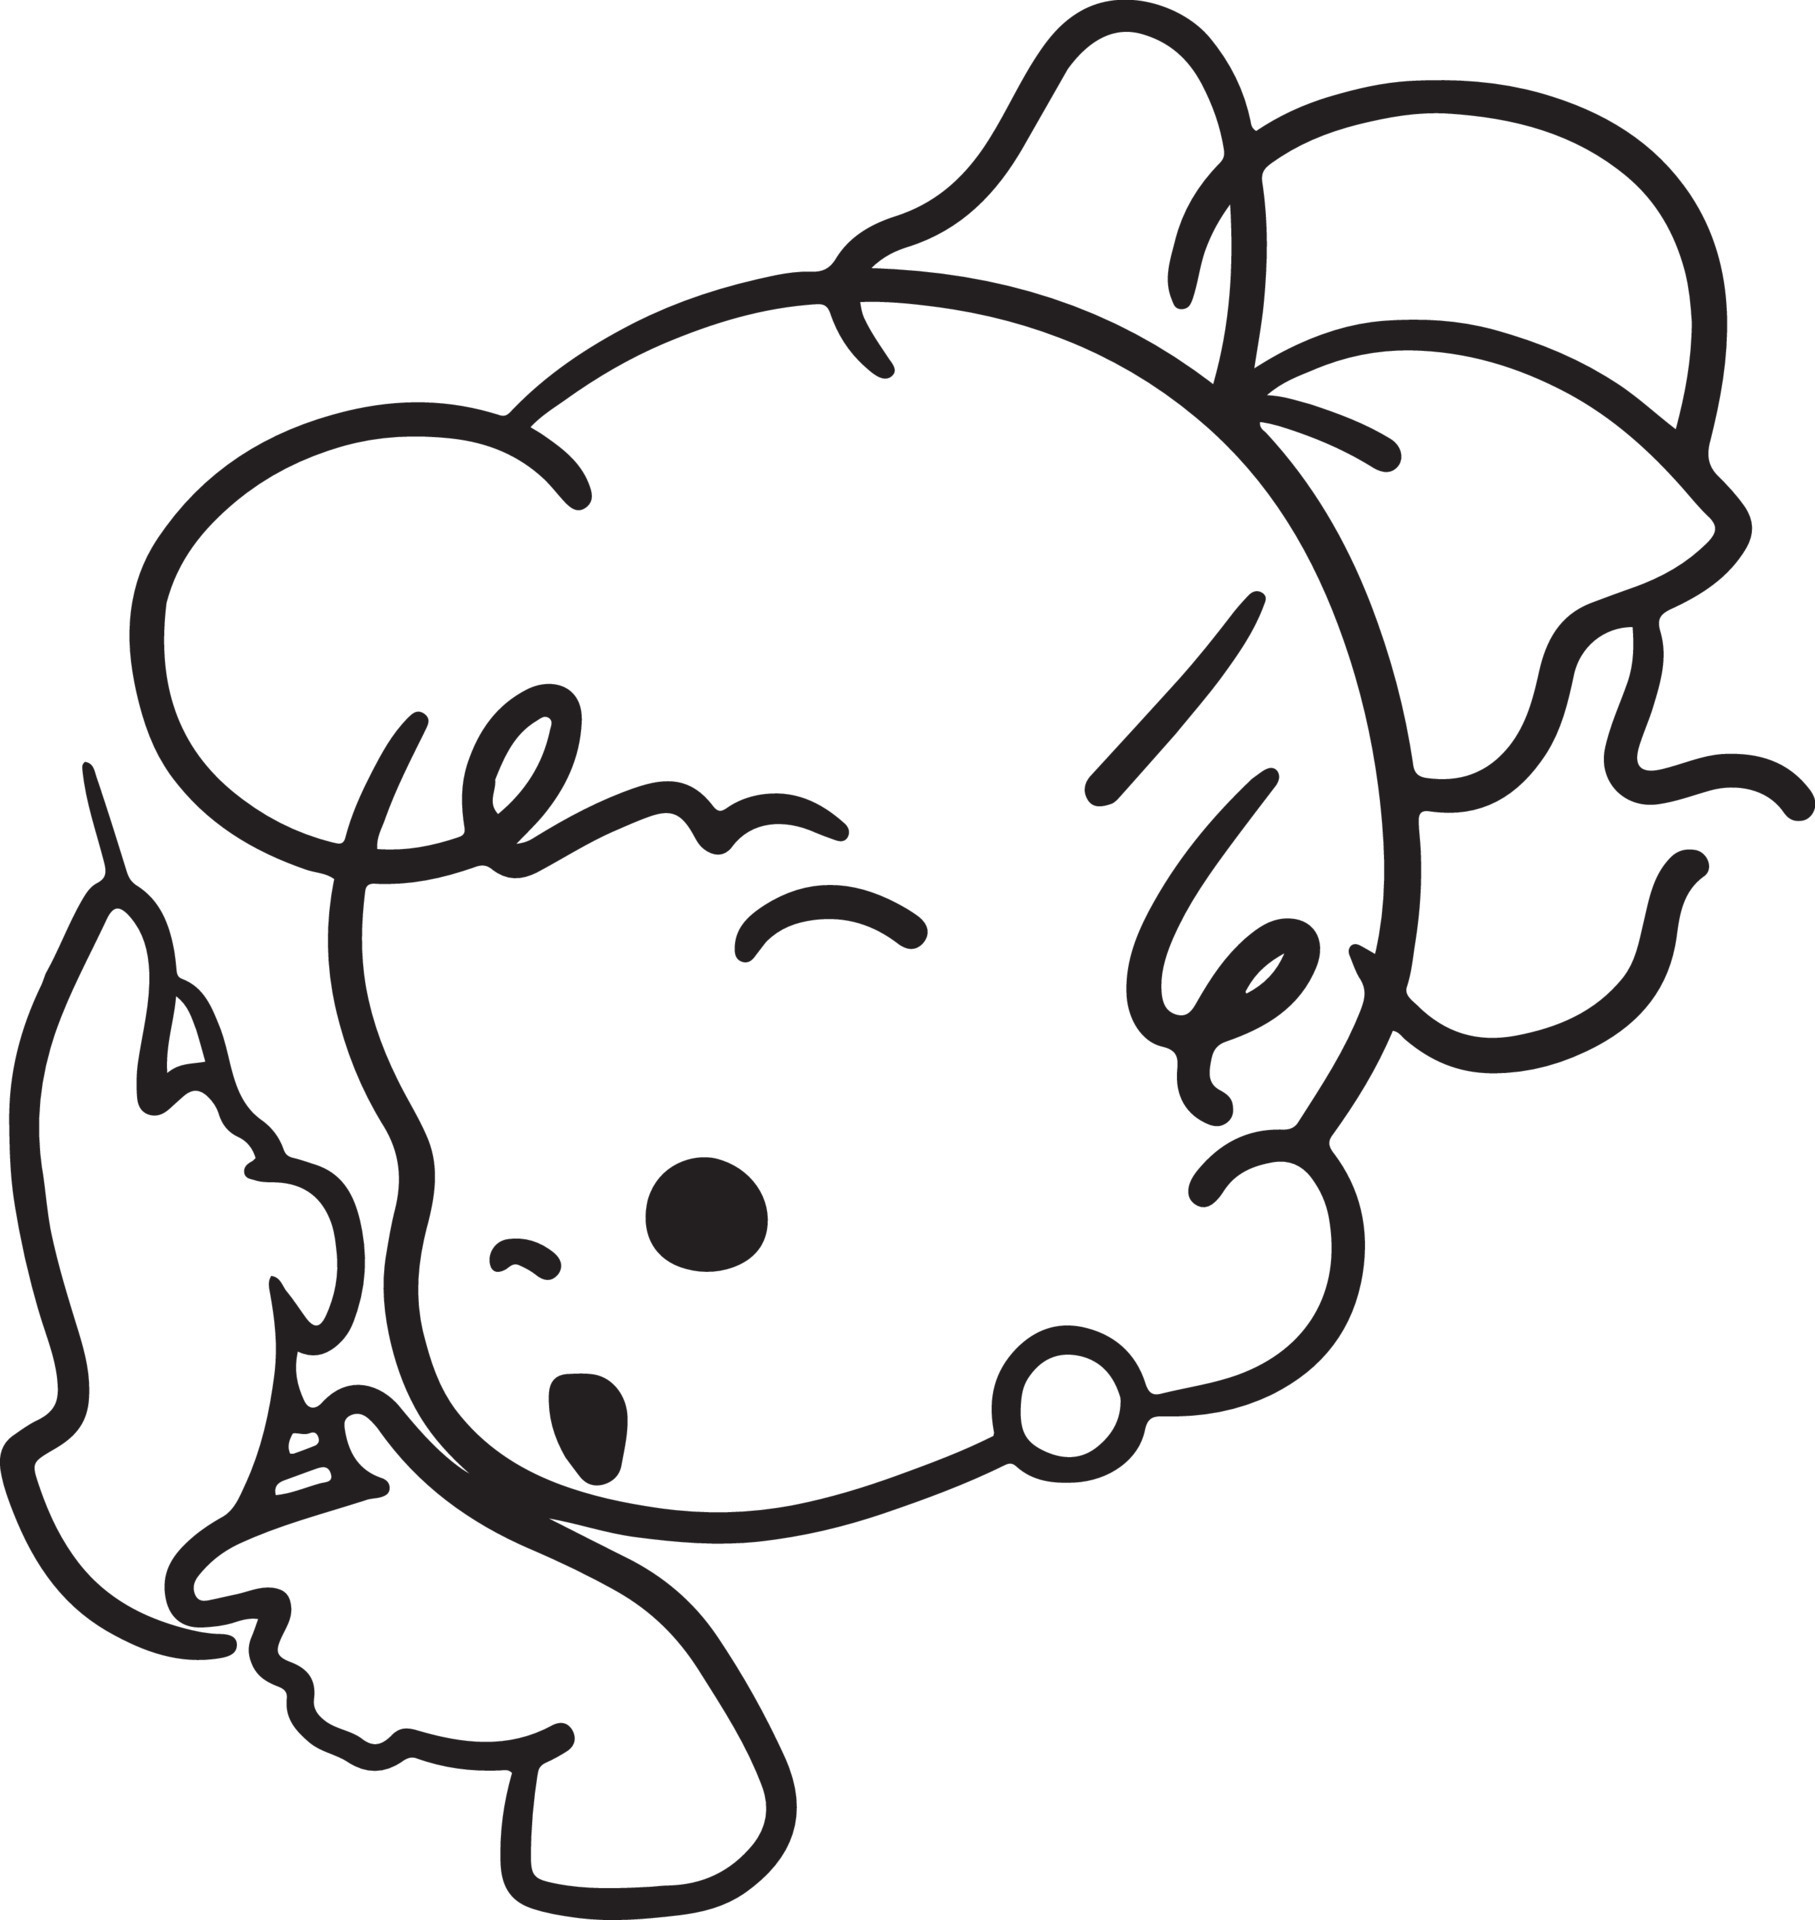 boneca para colorir vestir desenho desenhos animados rabisco kawaii anime  ilustração fofa desenhando personagem de clip art chibi manga cômico  15280934 PNG